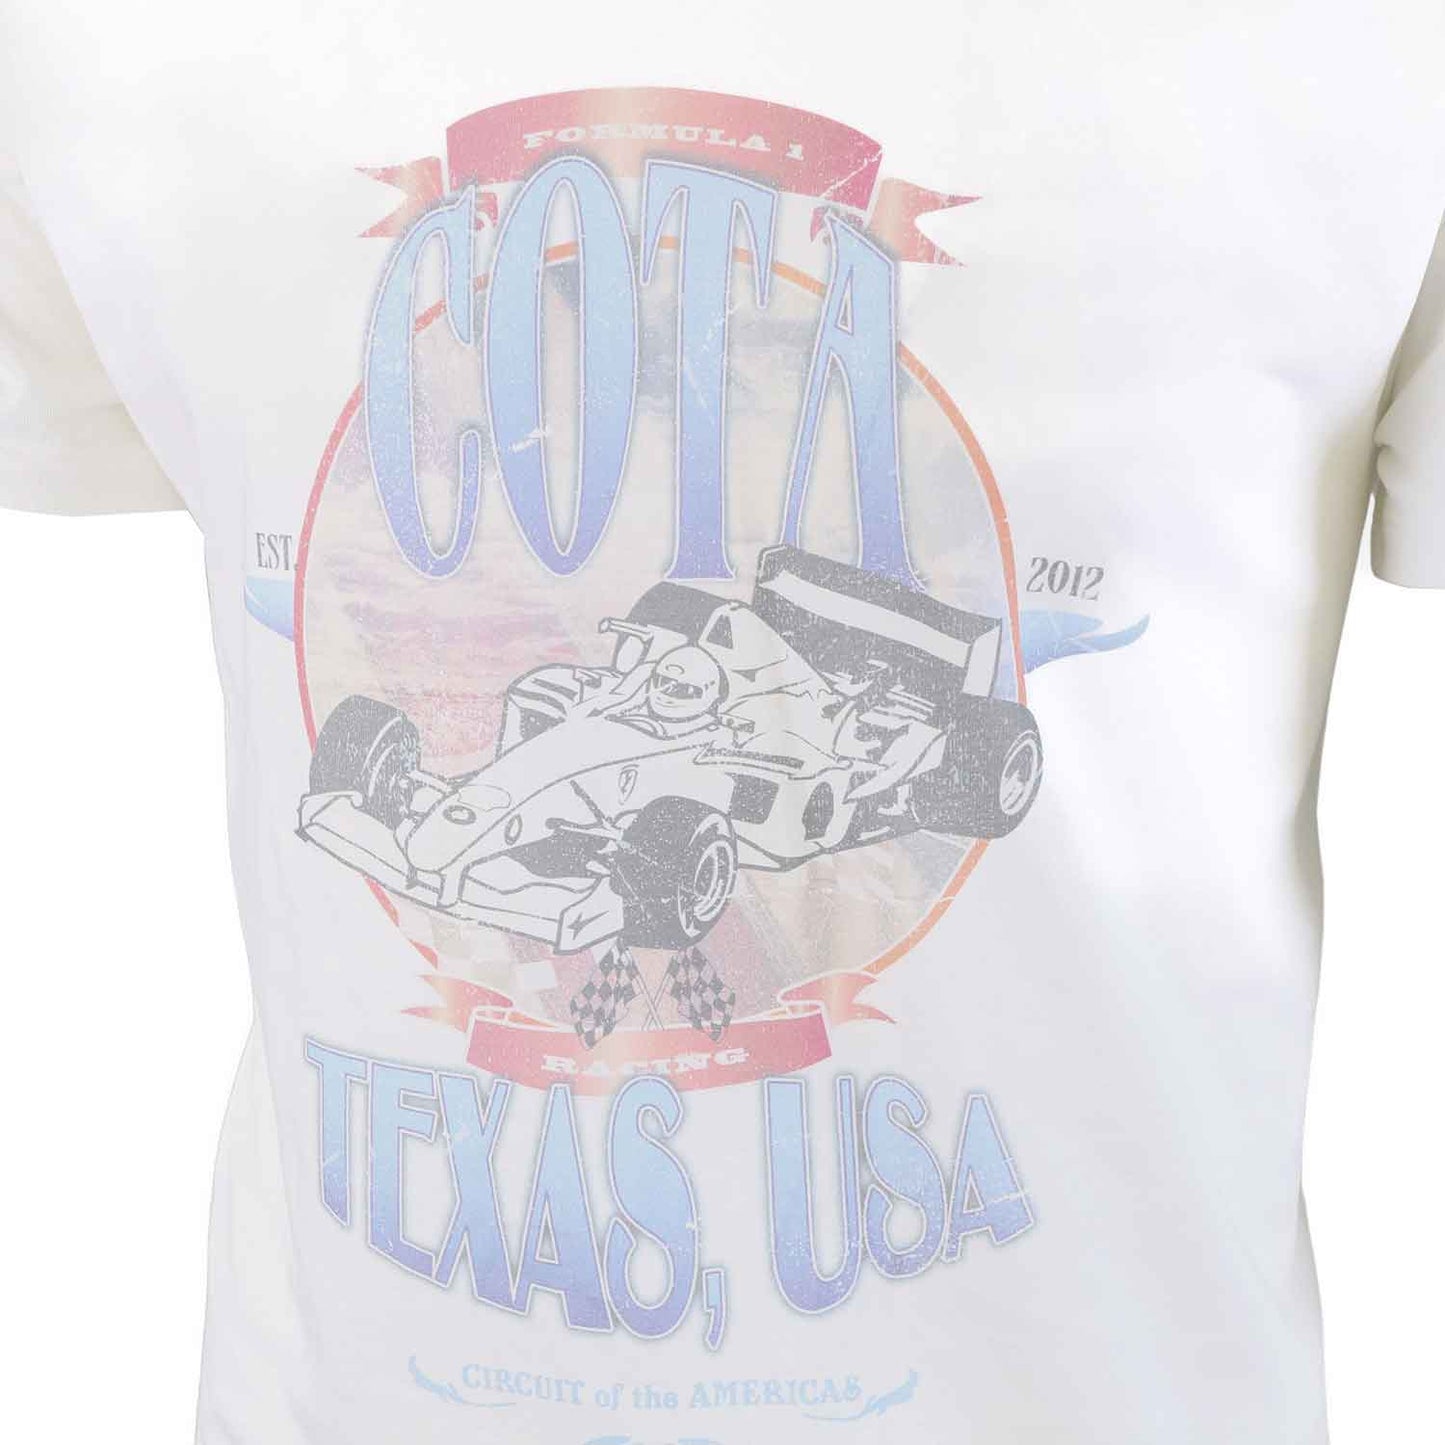 Heren T-shirt ‘Cota Texas USA’